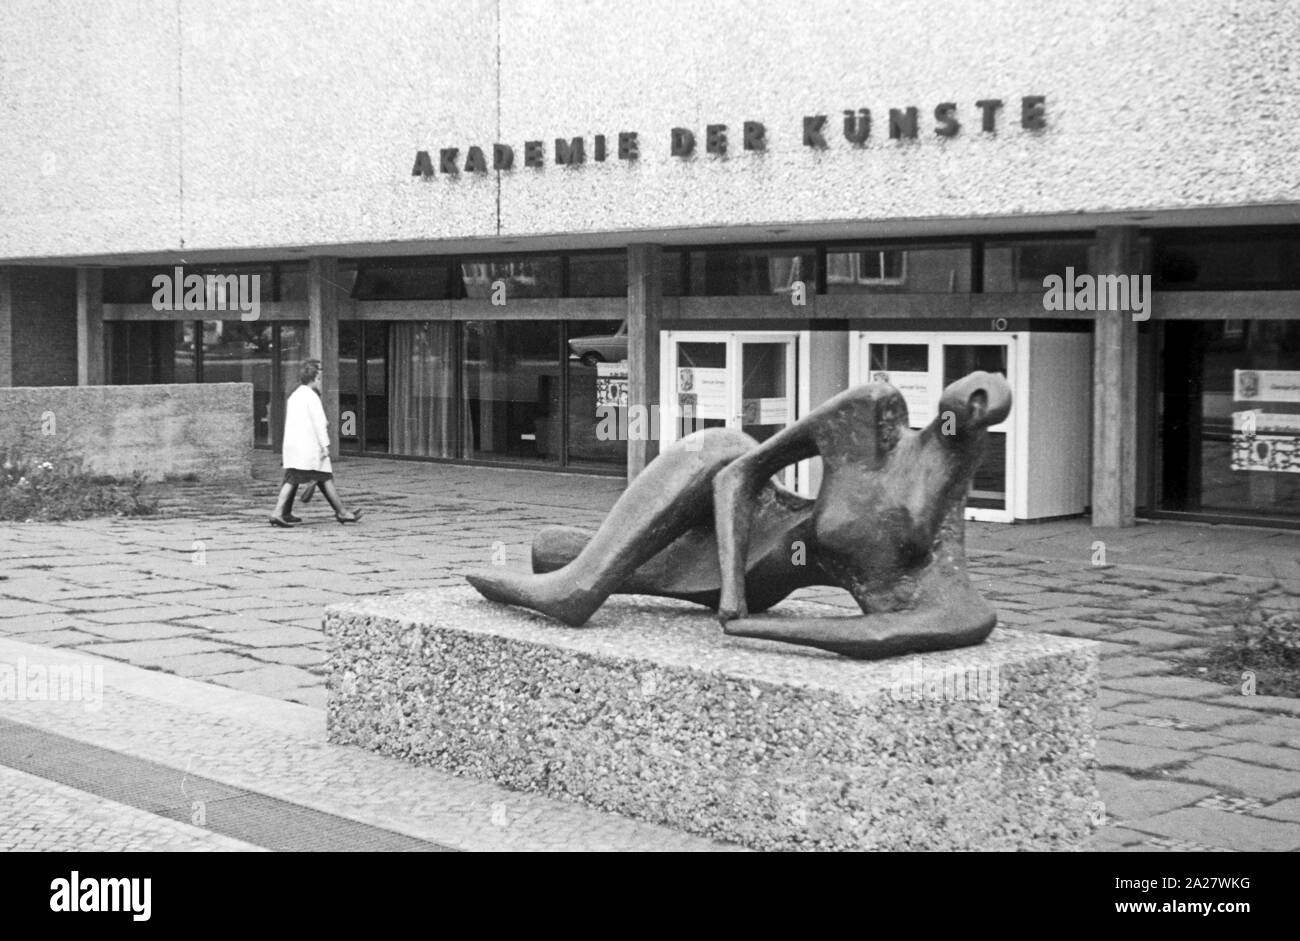 Eingang zur Akademie der Künste im Hanseatenweg mit der Skulptur 'Liegende' von Henry Moore in Berlin, Deutschland 1962. Entrance to the Academy of Art at Hanseatenweg and the scultpure 'Liegende' by Henry Moore at Berlin, Germany 1962. Stock Photo